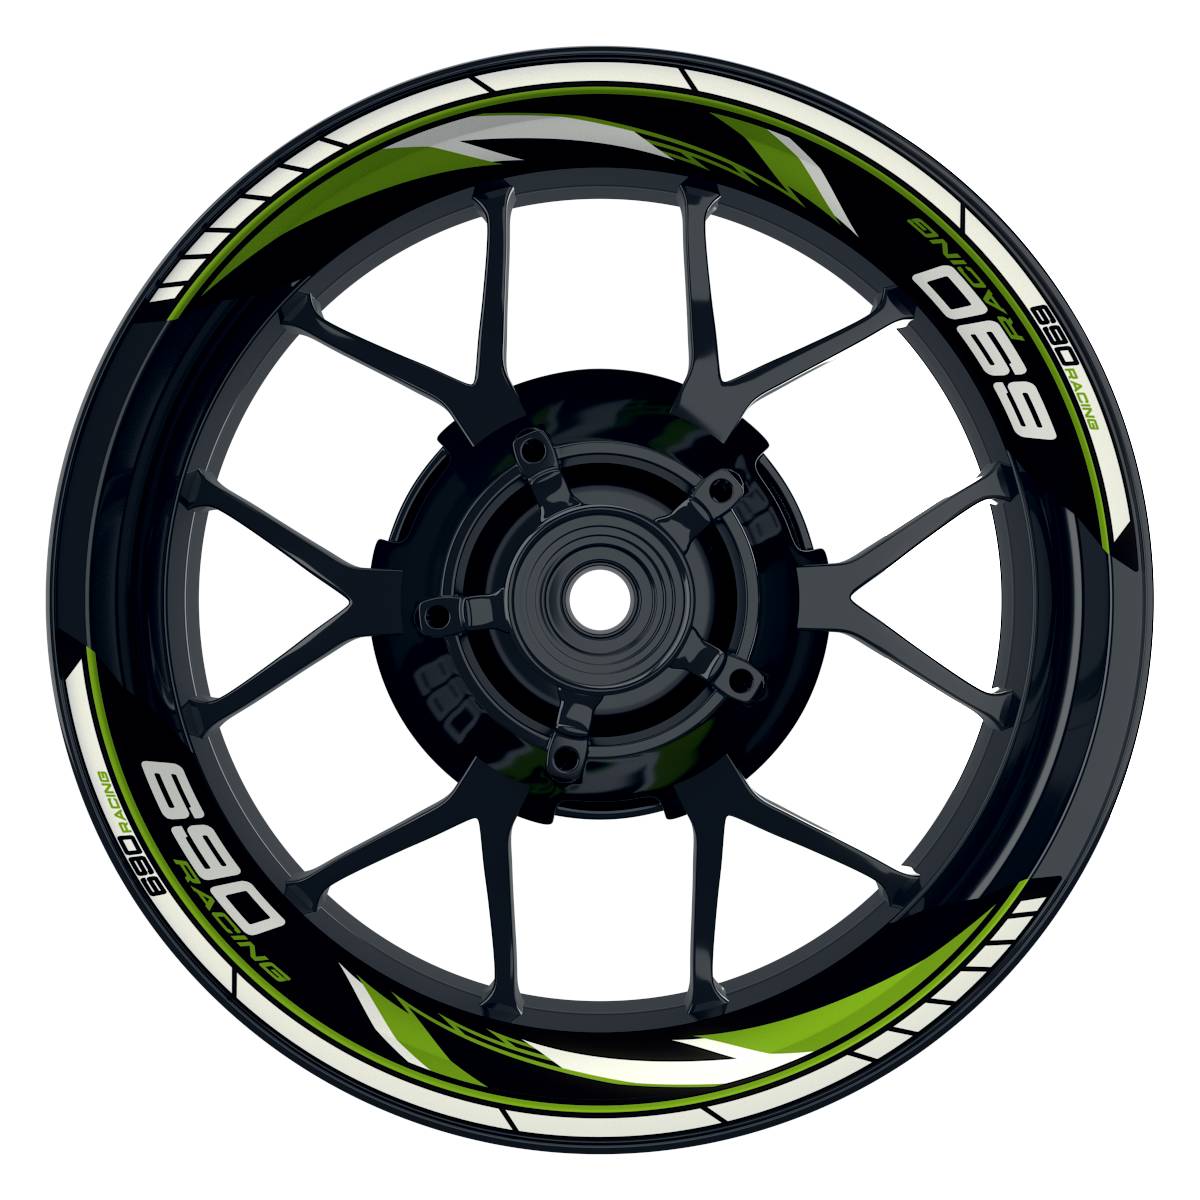 KTM Racing 690 Razor schwarz gruen Frontansicht